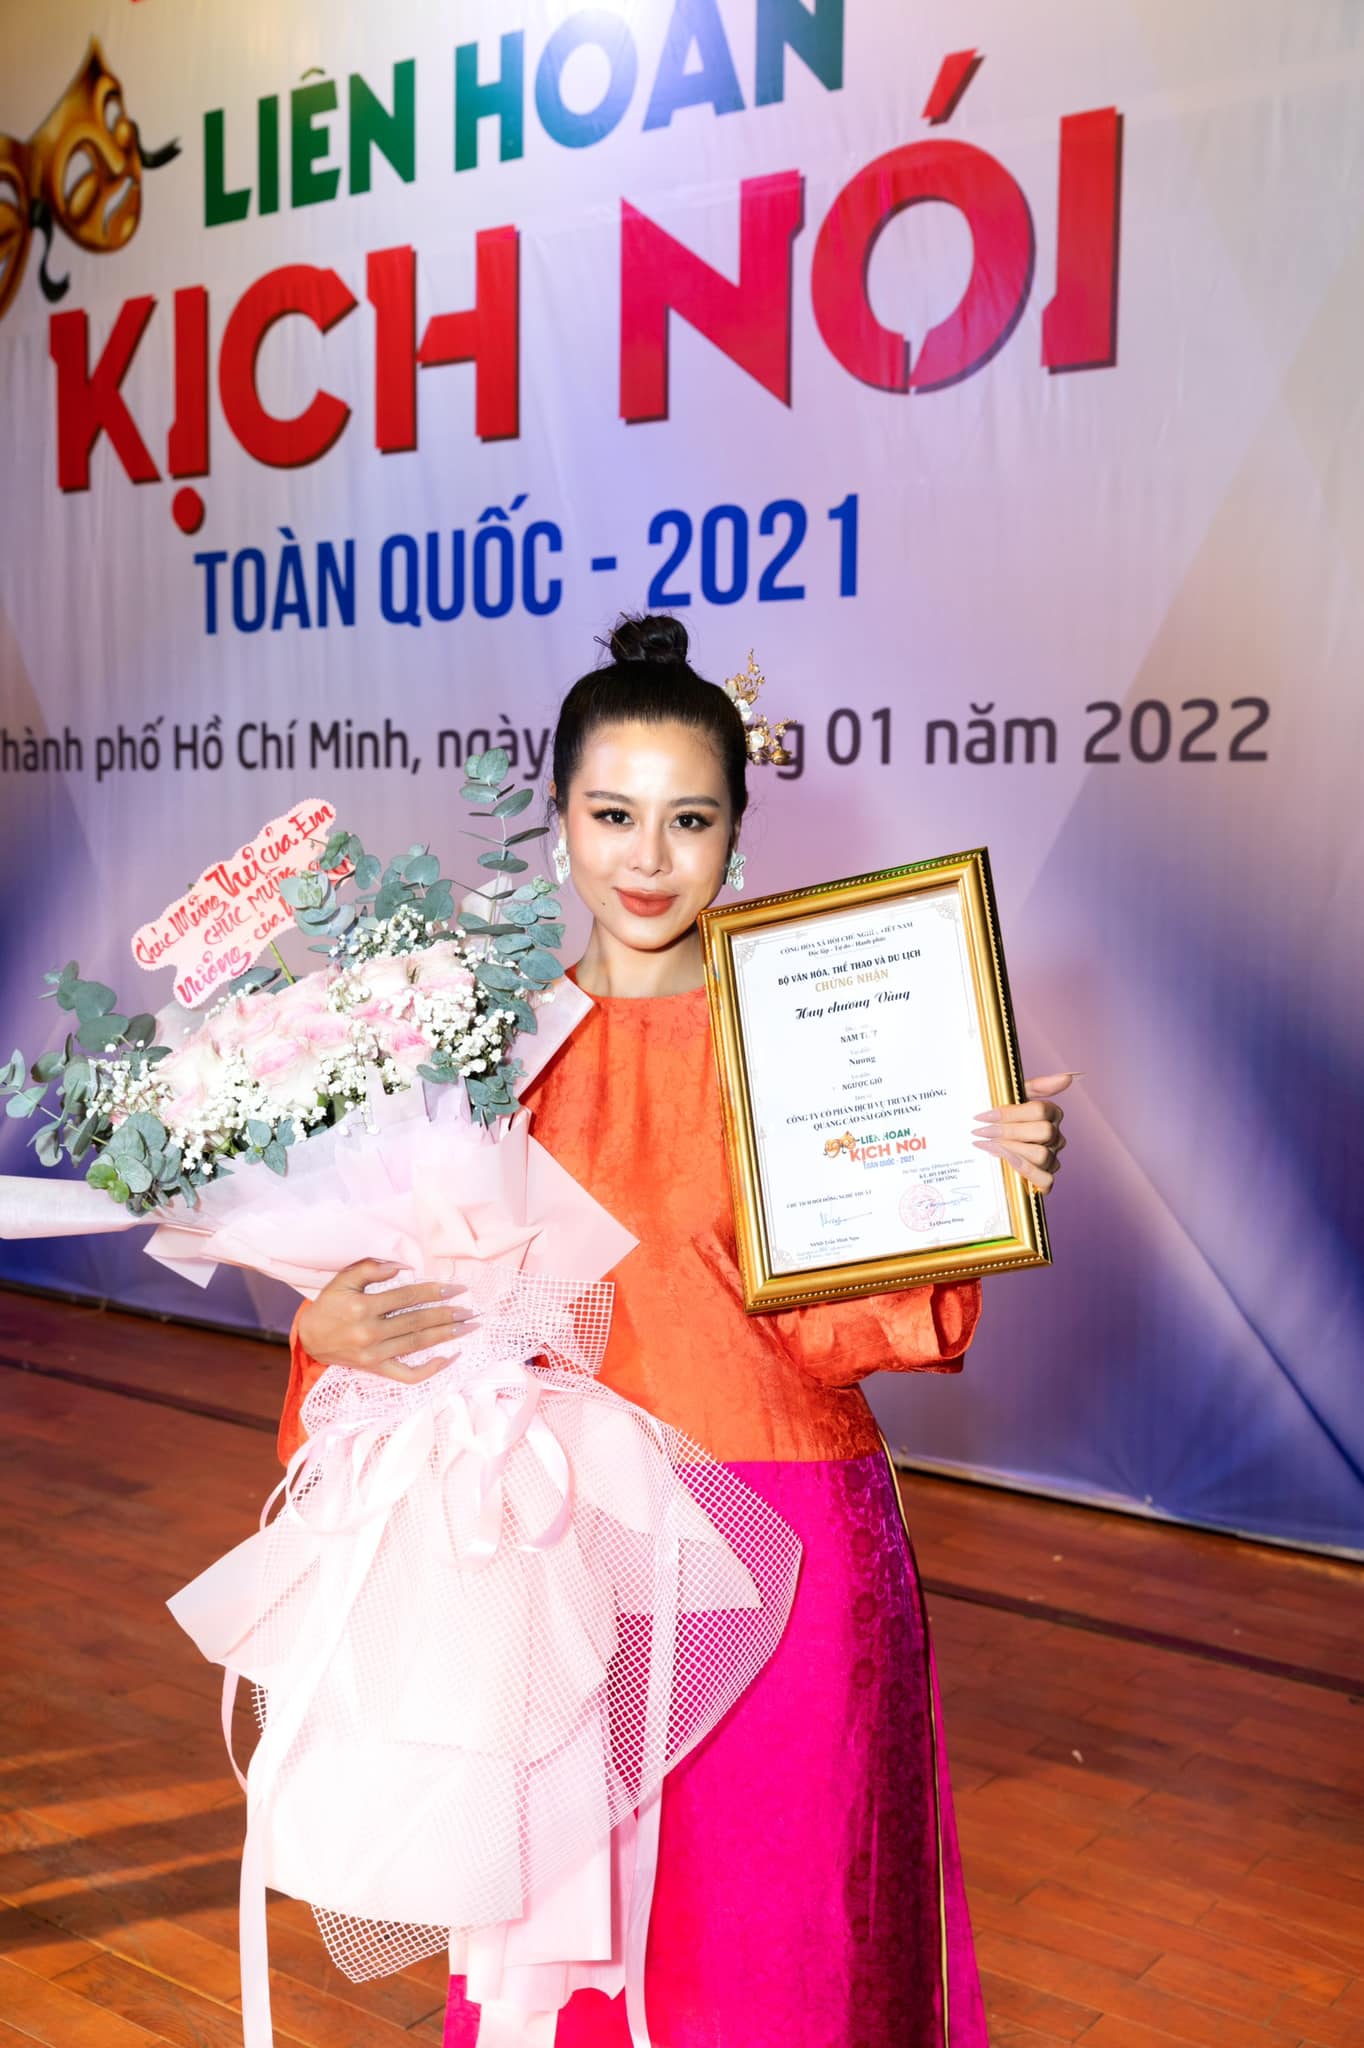 Diễn viên Nam Thư nhận huy chương vàng tại Liên hoan Sân khấu Kịch nói 2021 vừa qua